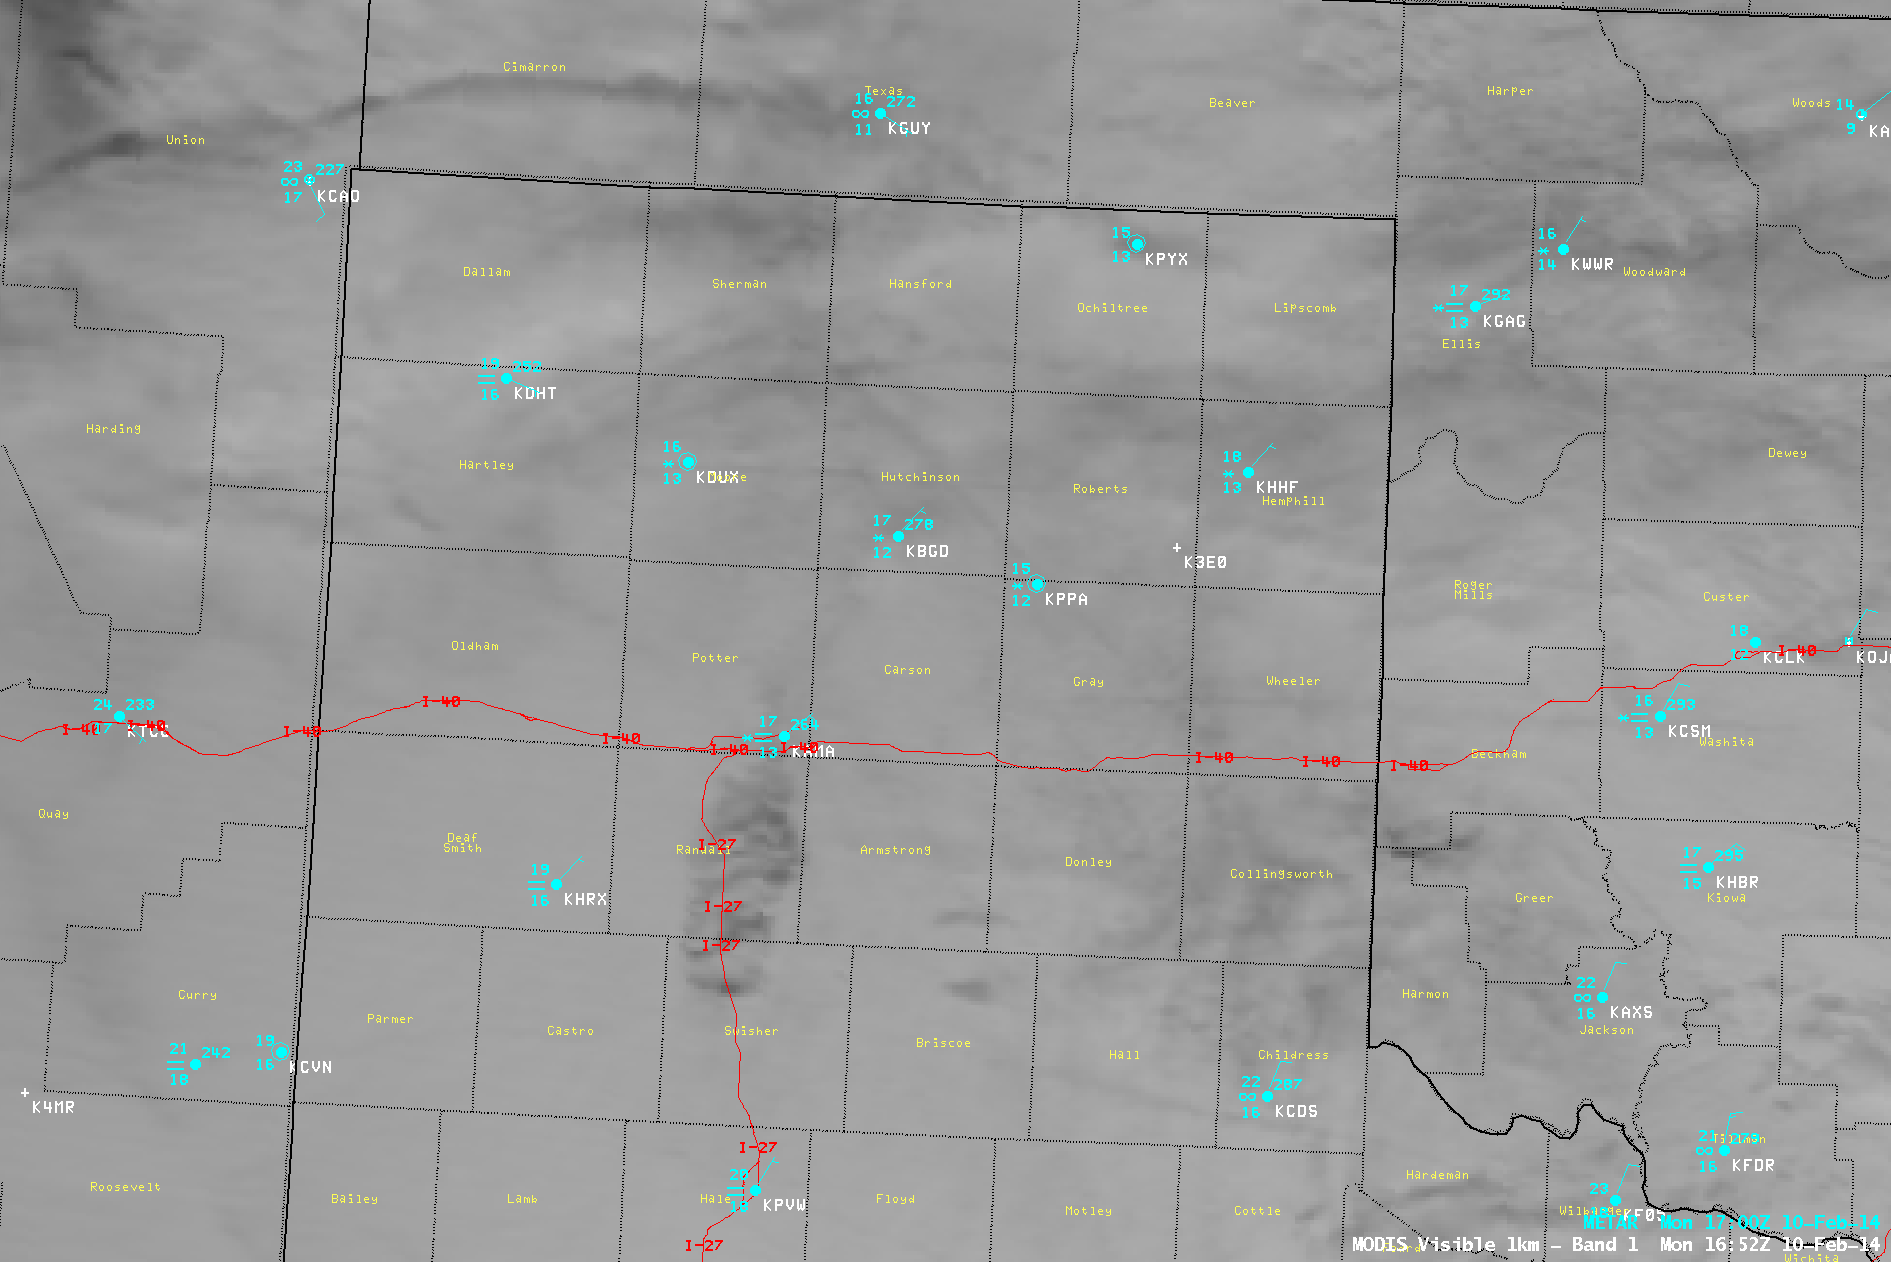 Terra MODIS 0.65 Âµm visible, 3.7 Âµm shortwave IR, and 11.0 Âµm IR window channel images